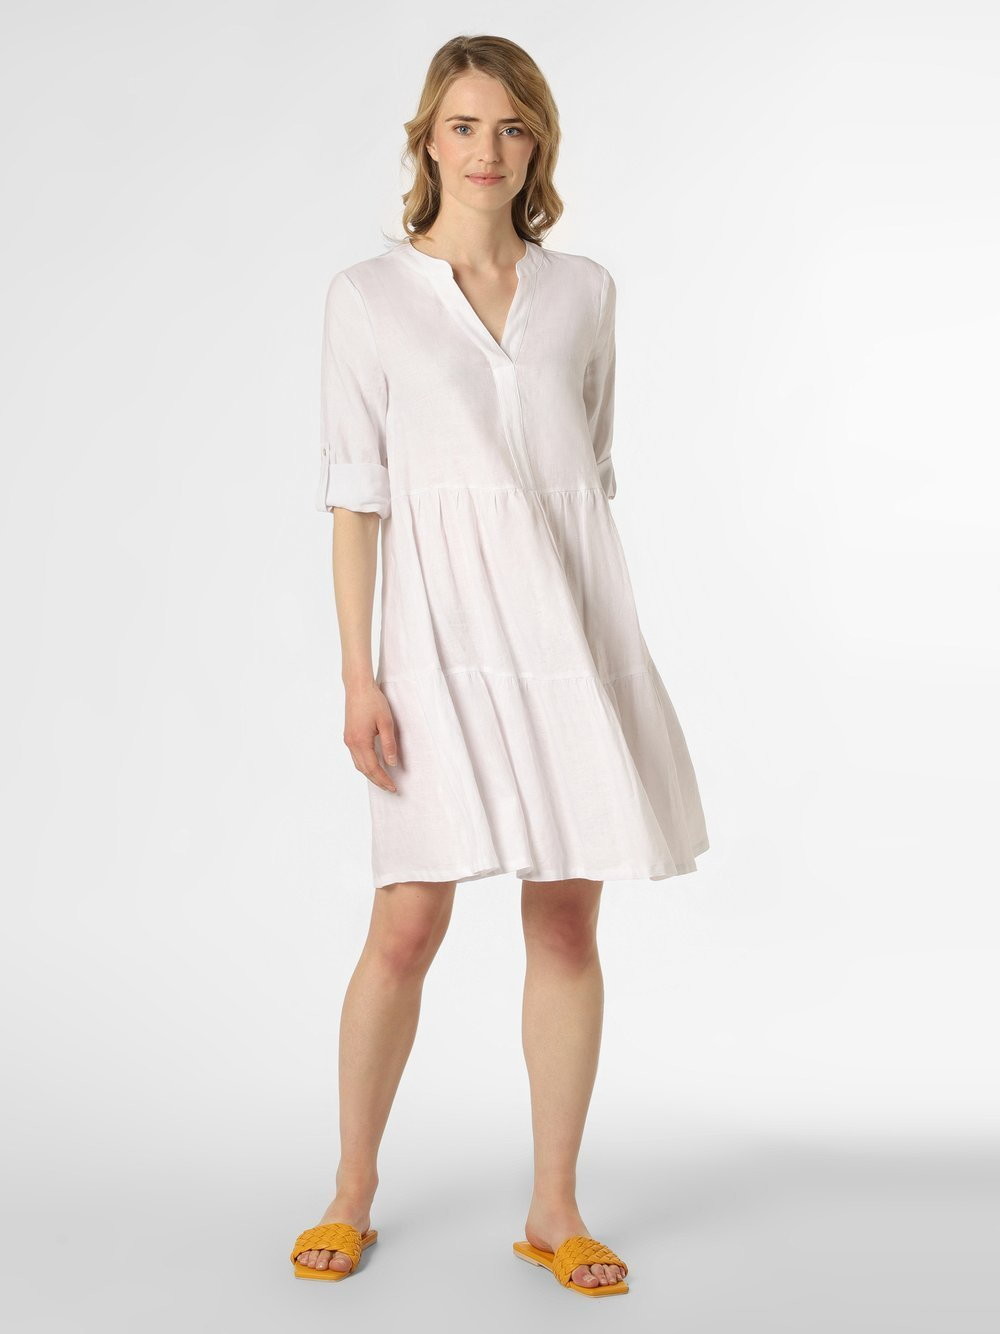 Apriori Apriori - Damska sukienka lniana, biały